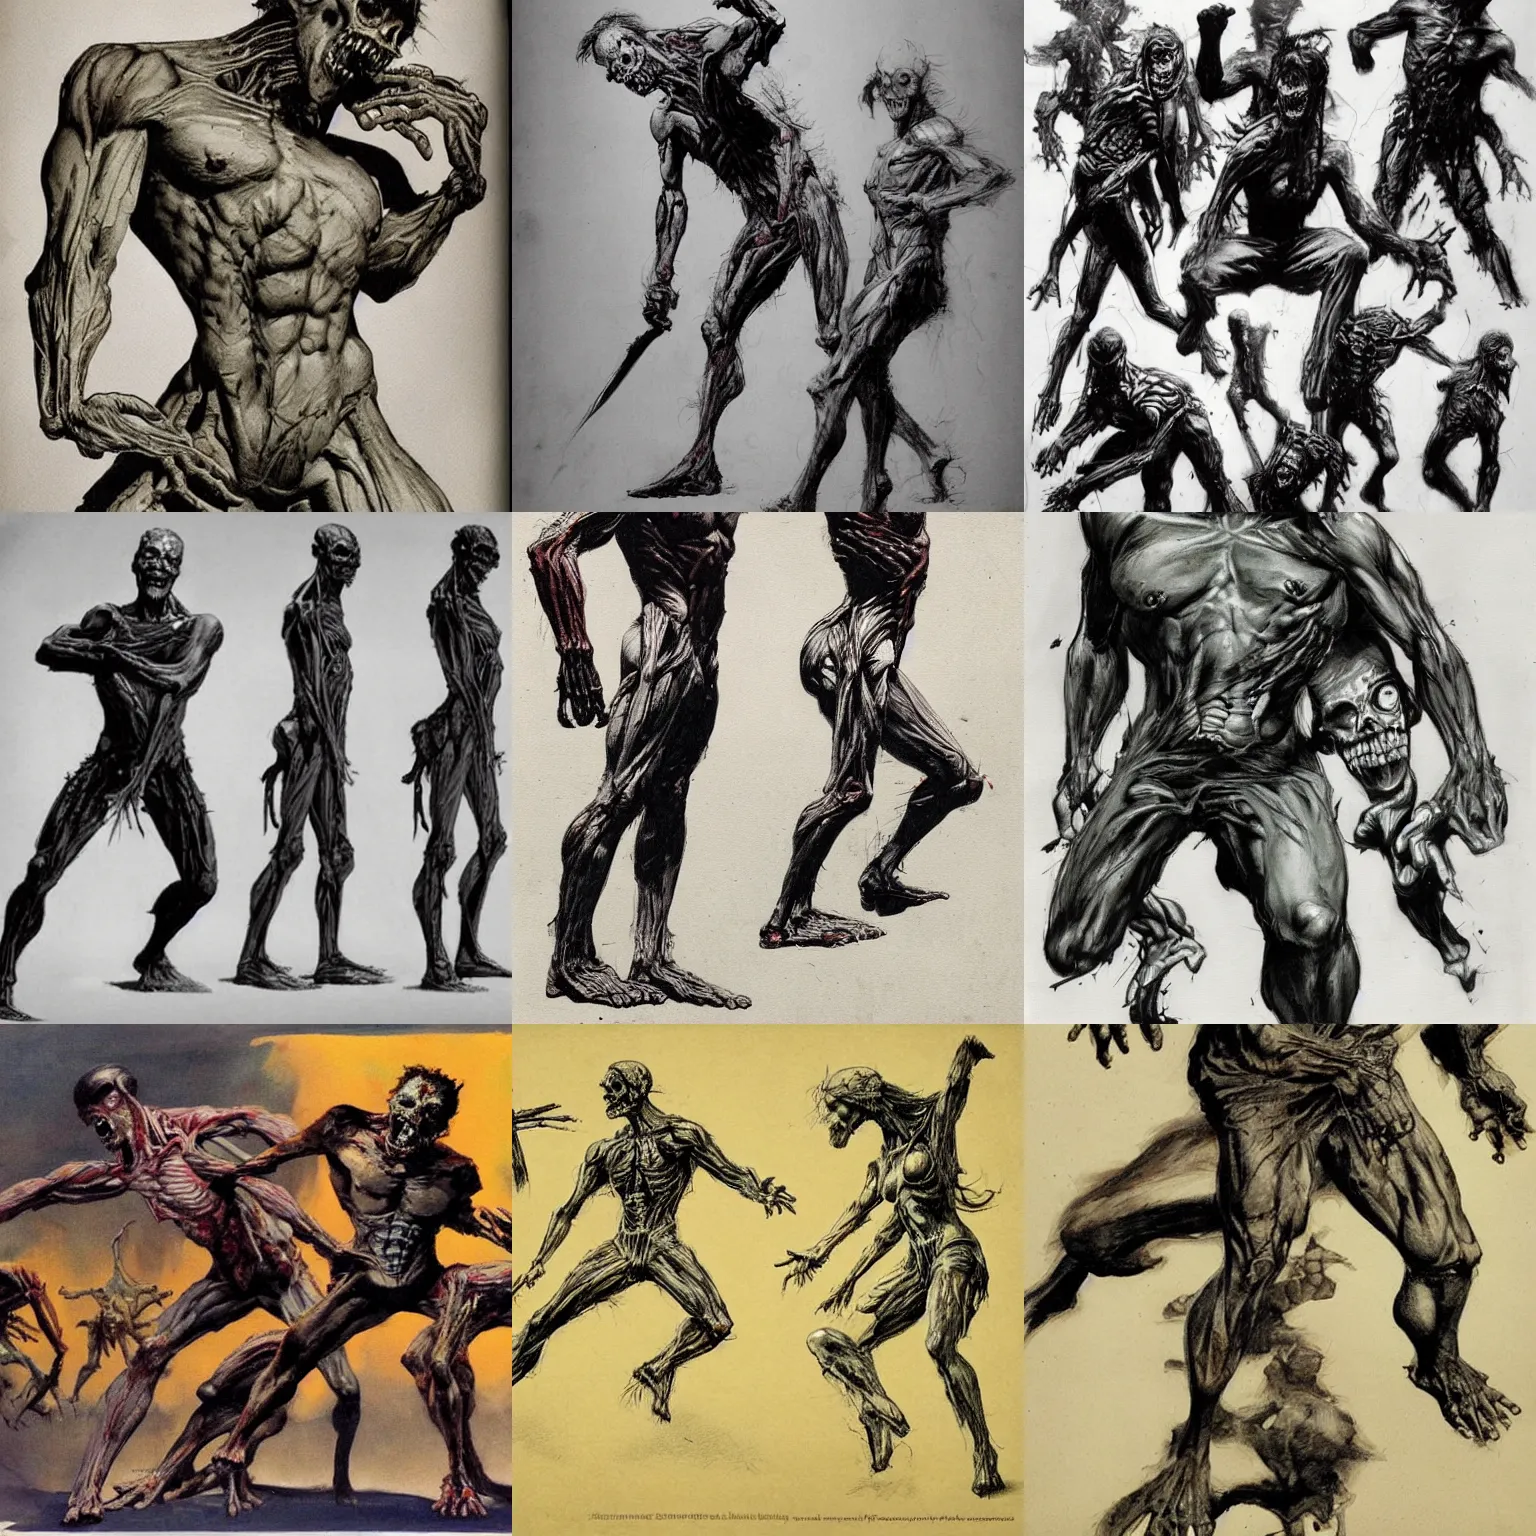 Prompt: zombie anatomy study in dynamic poses by frank frazetta